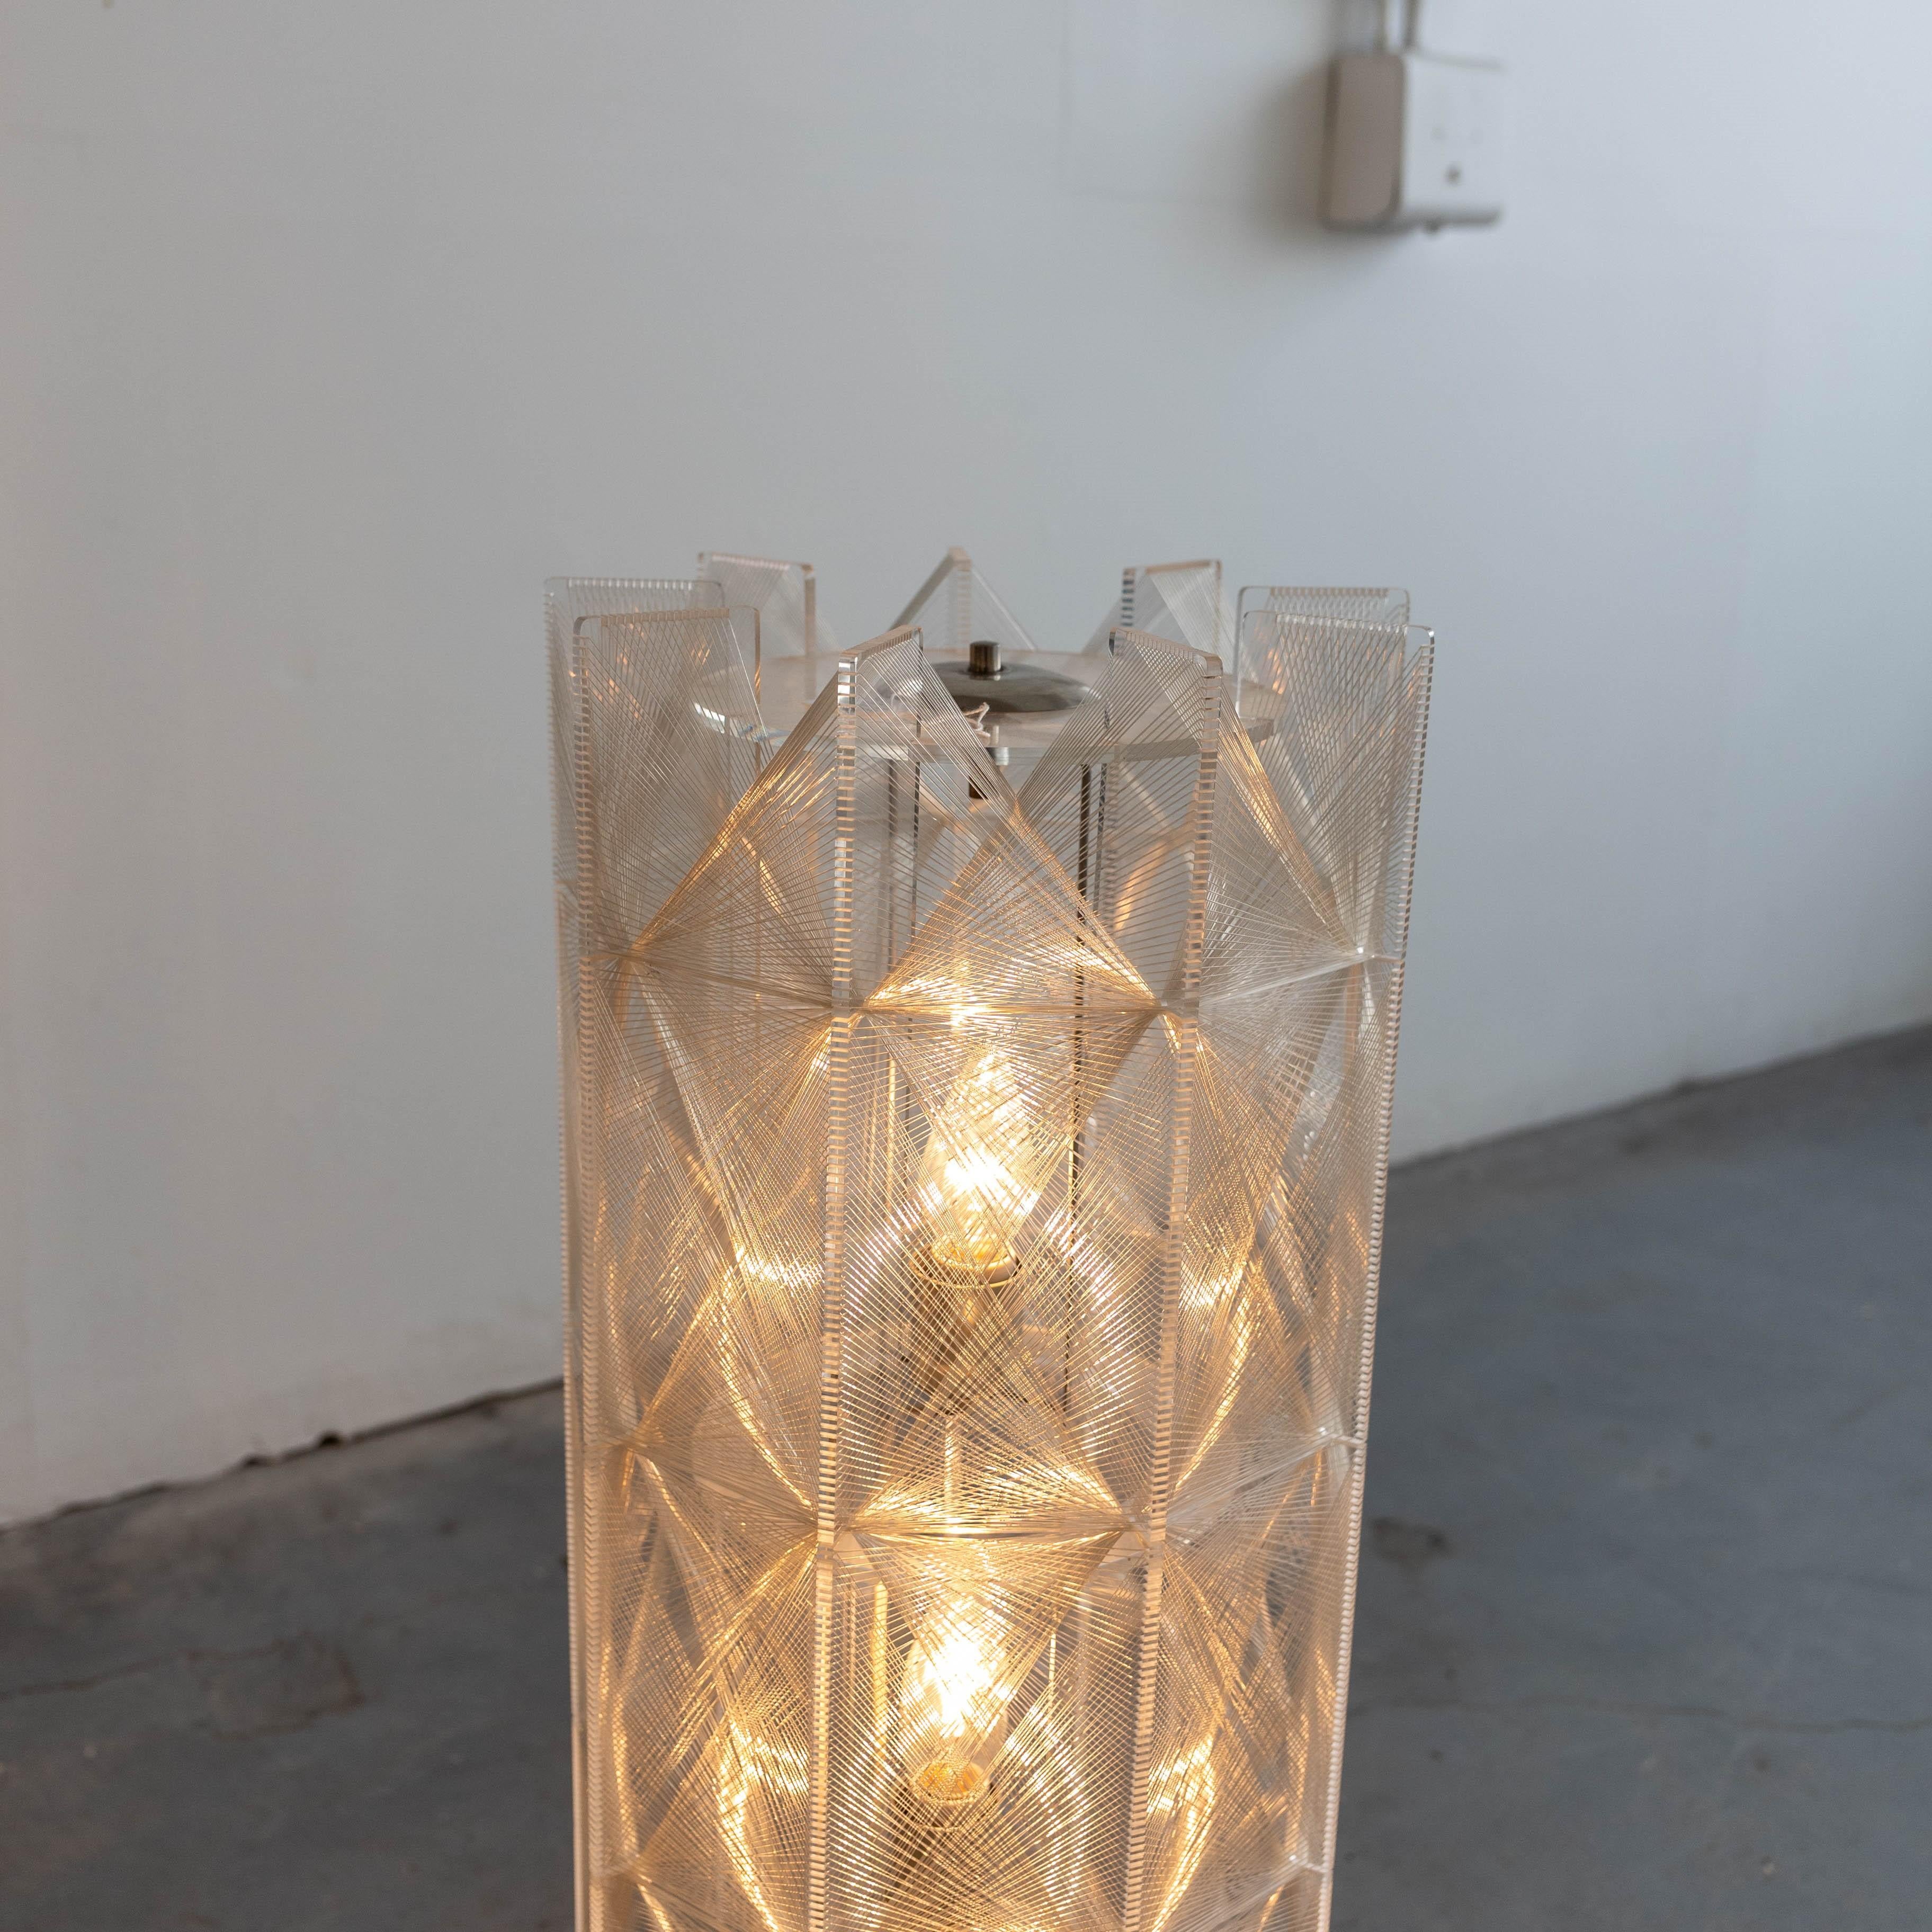 German Paul Secon Floor Lamps